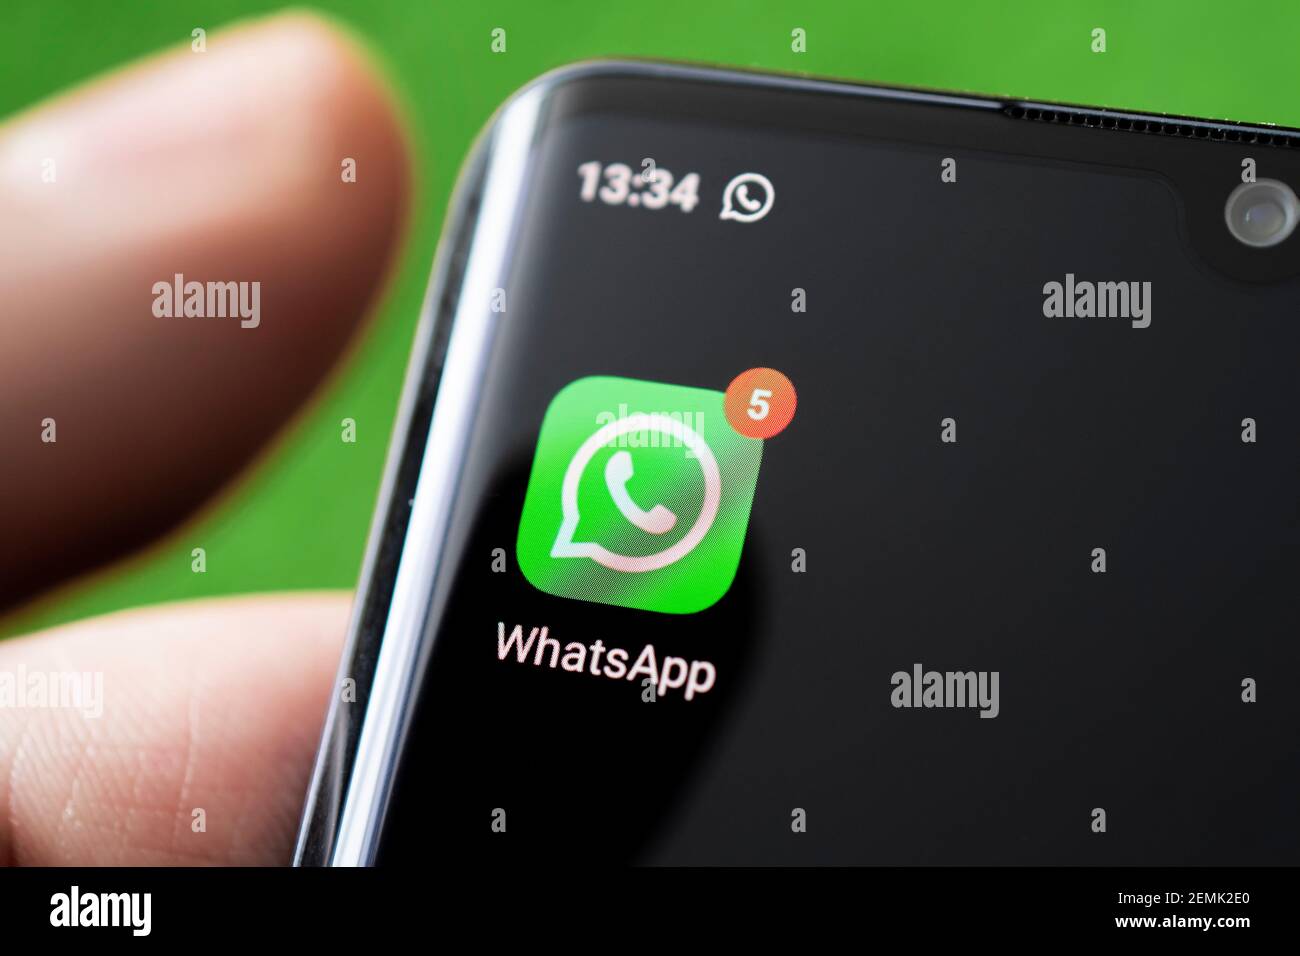 Icône de l'application whatsapp, sur l'écran d'un smartphone noir. Barnaul, Russie, 10 février 2021 Banque D'Images